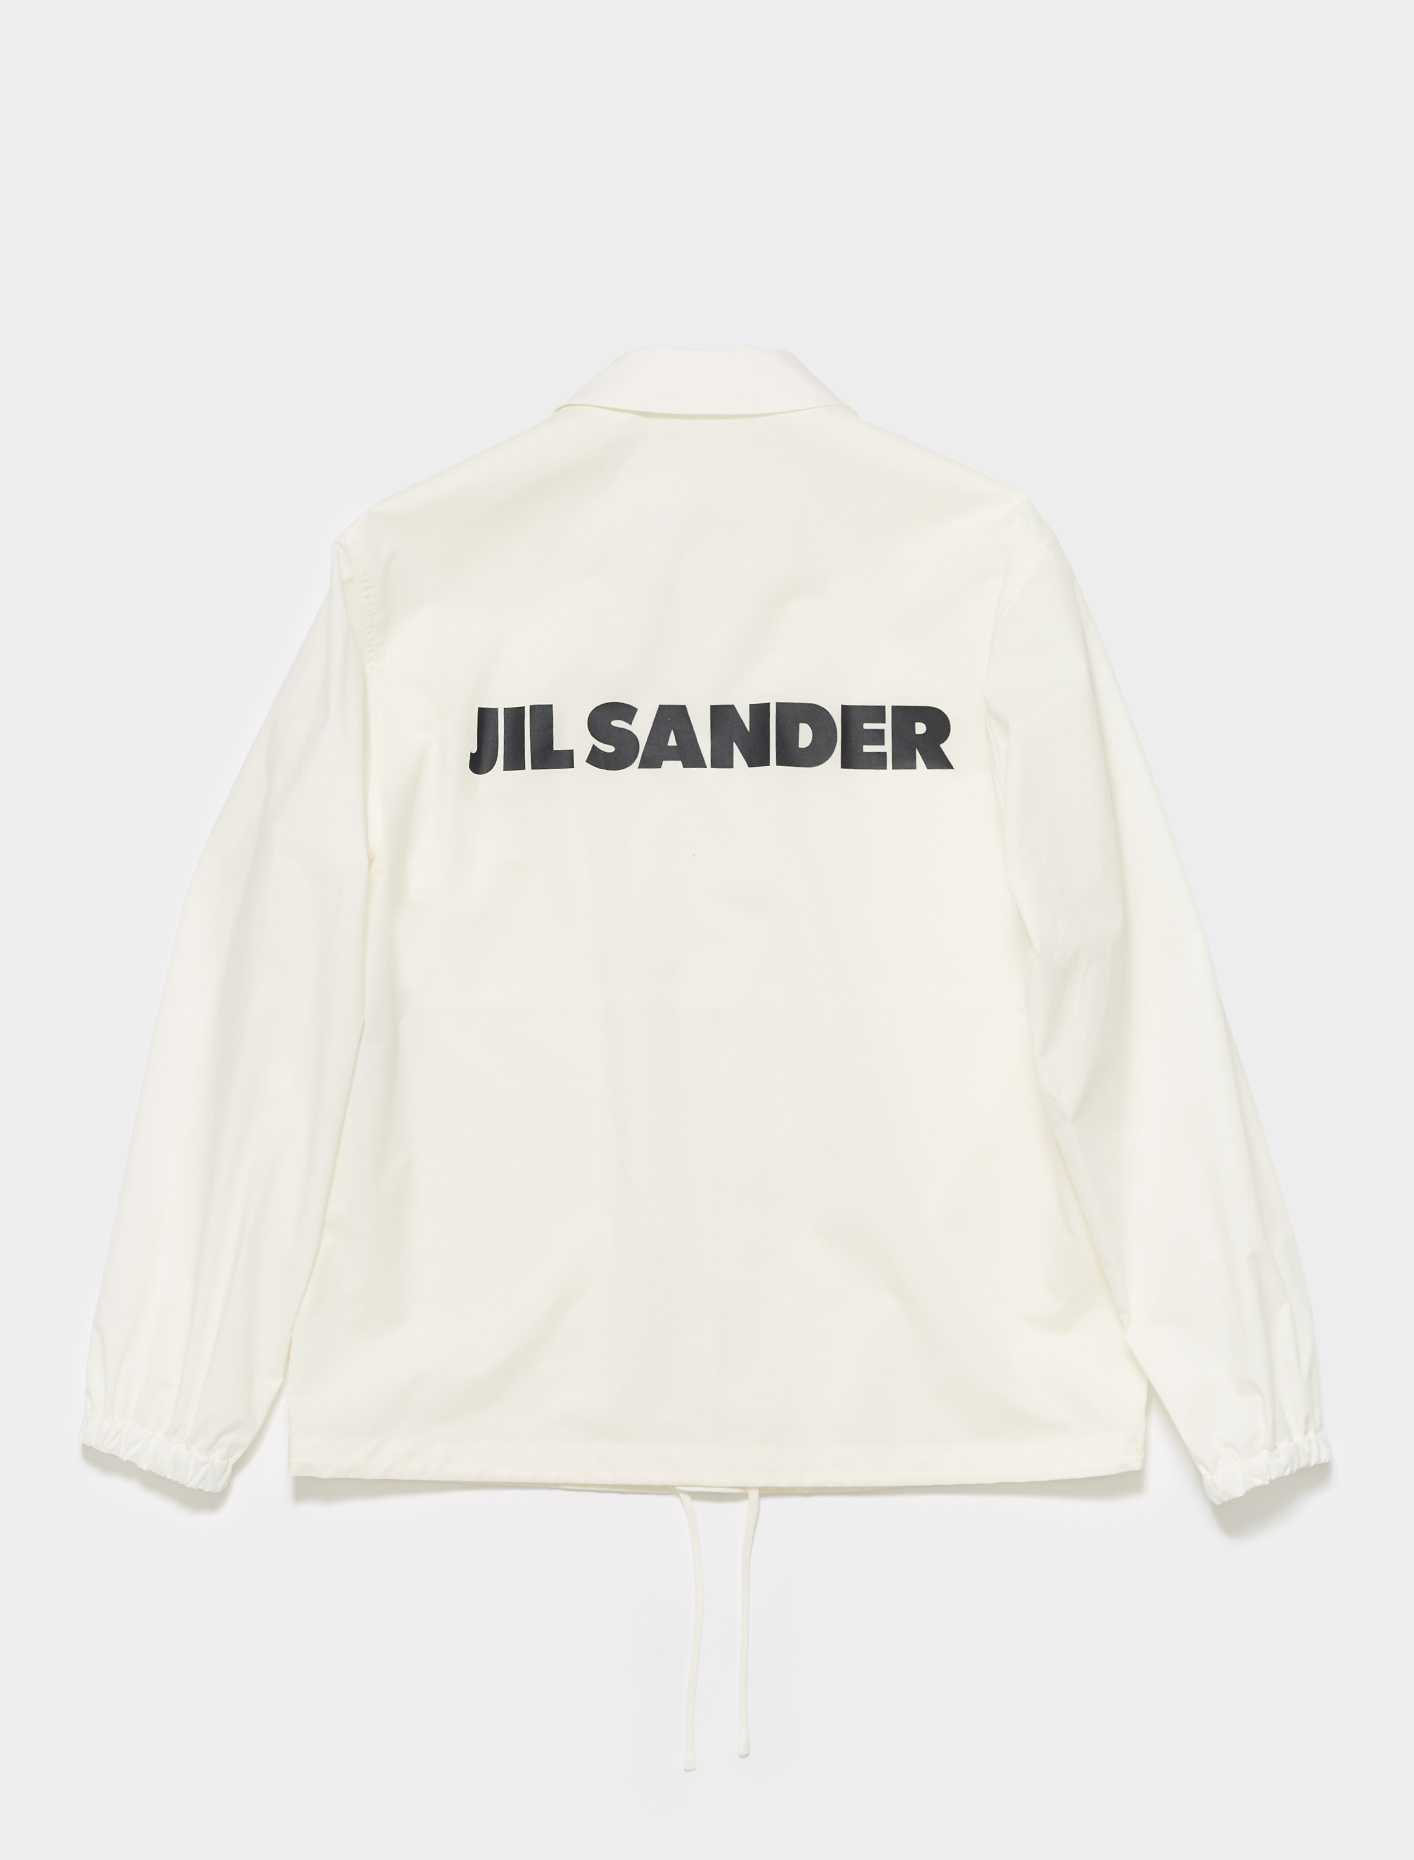 Jil Sander Rain Jacket in Natural | Voo Store Berlin | Worldwide Shipping